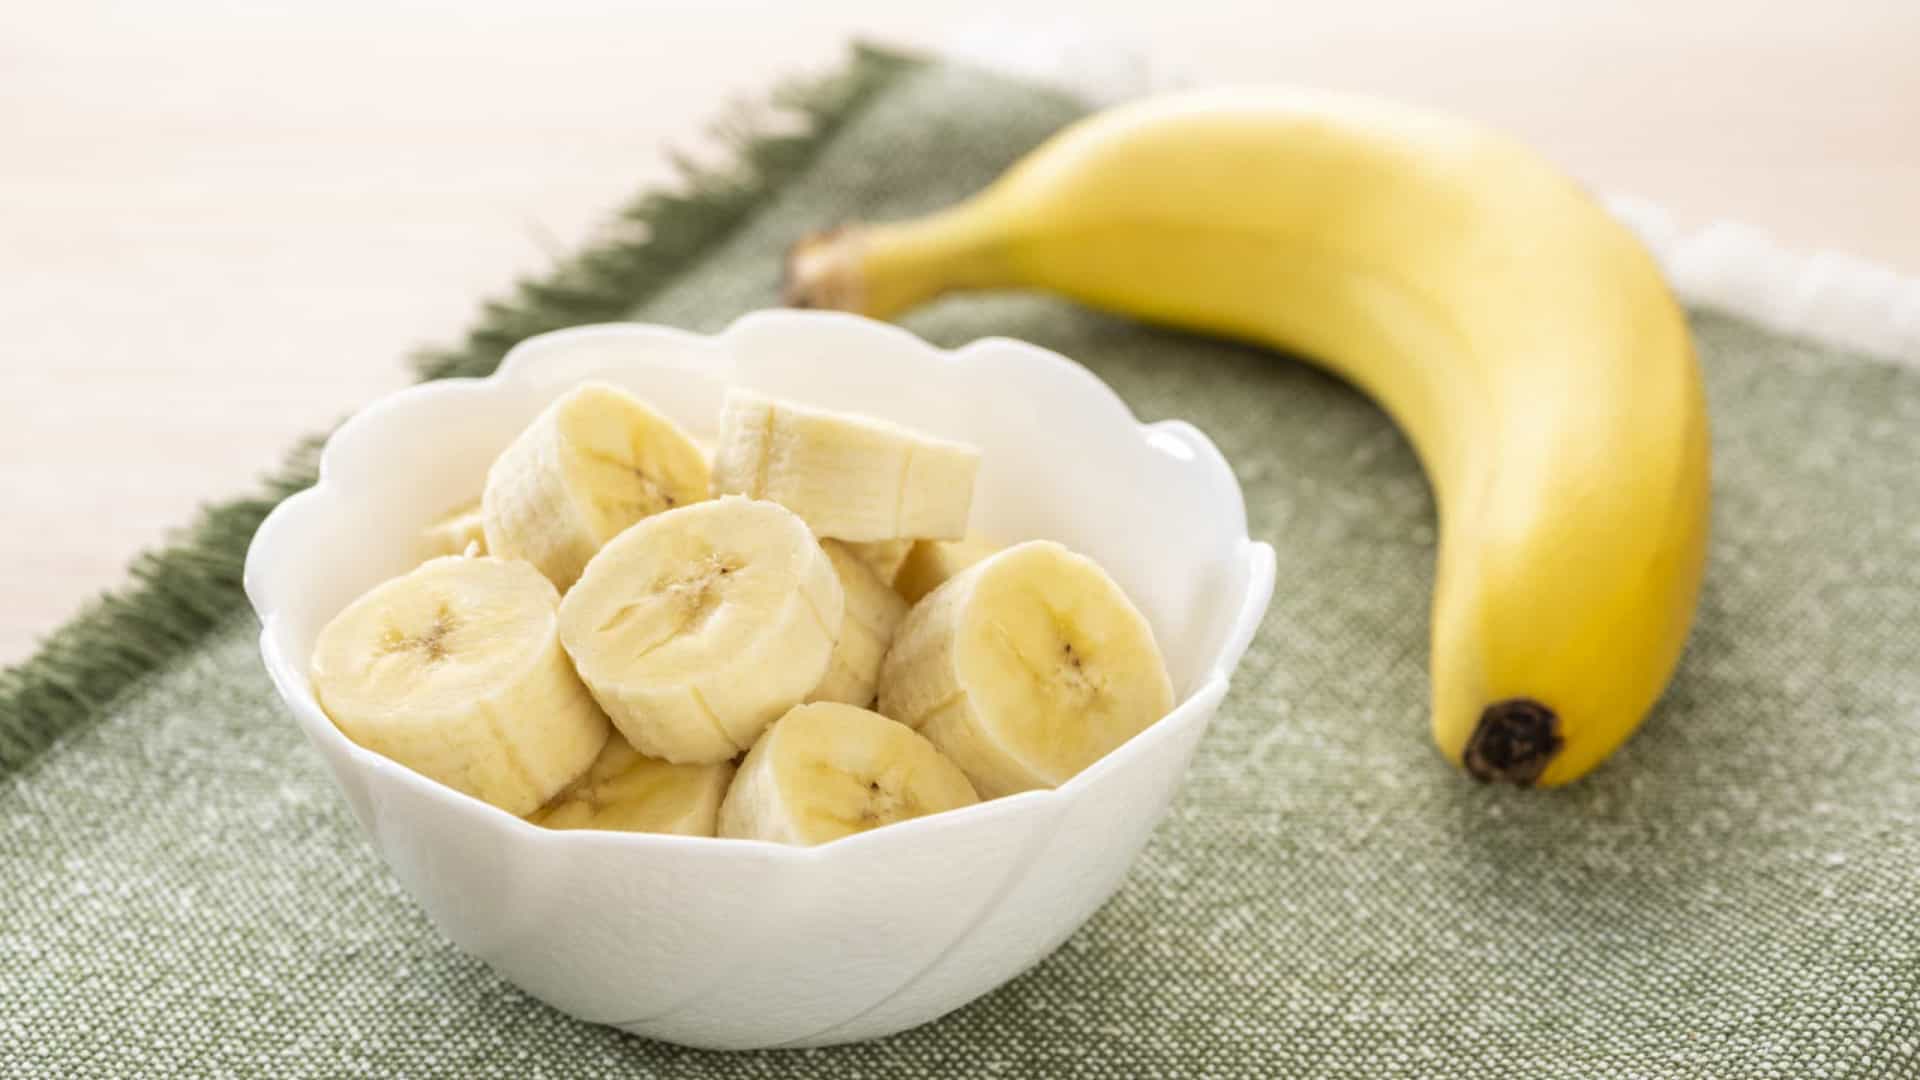 Conheça 5 motivos para comer uma banana antes de ir dormir - Potássio